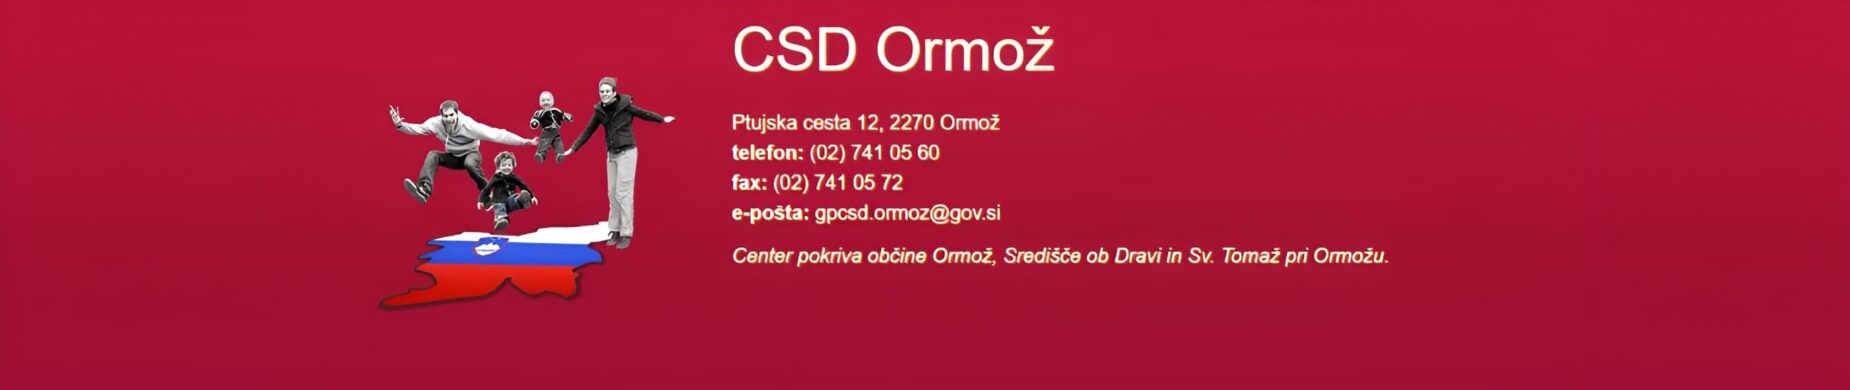 CSD Ormoz slider